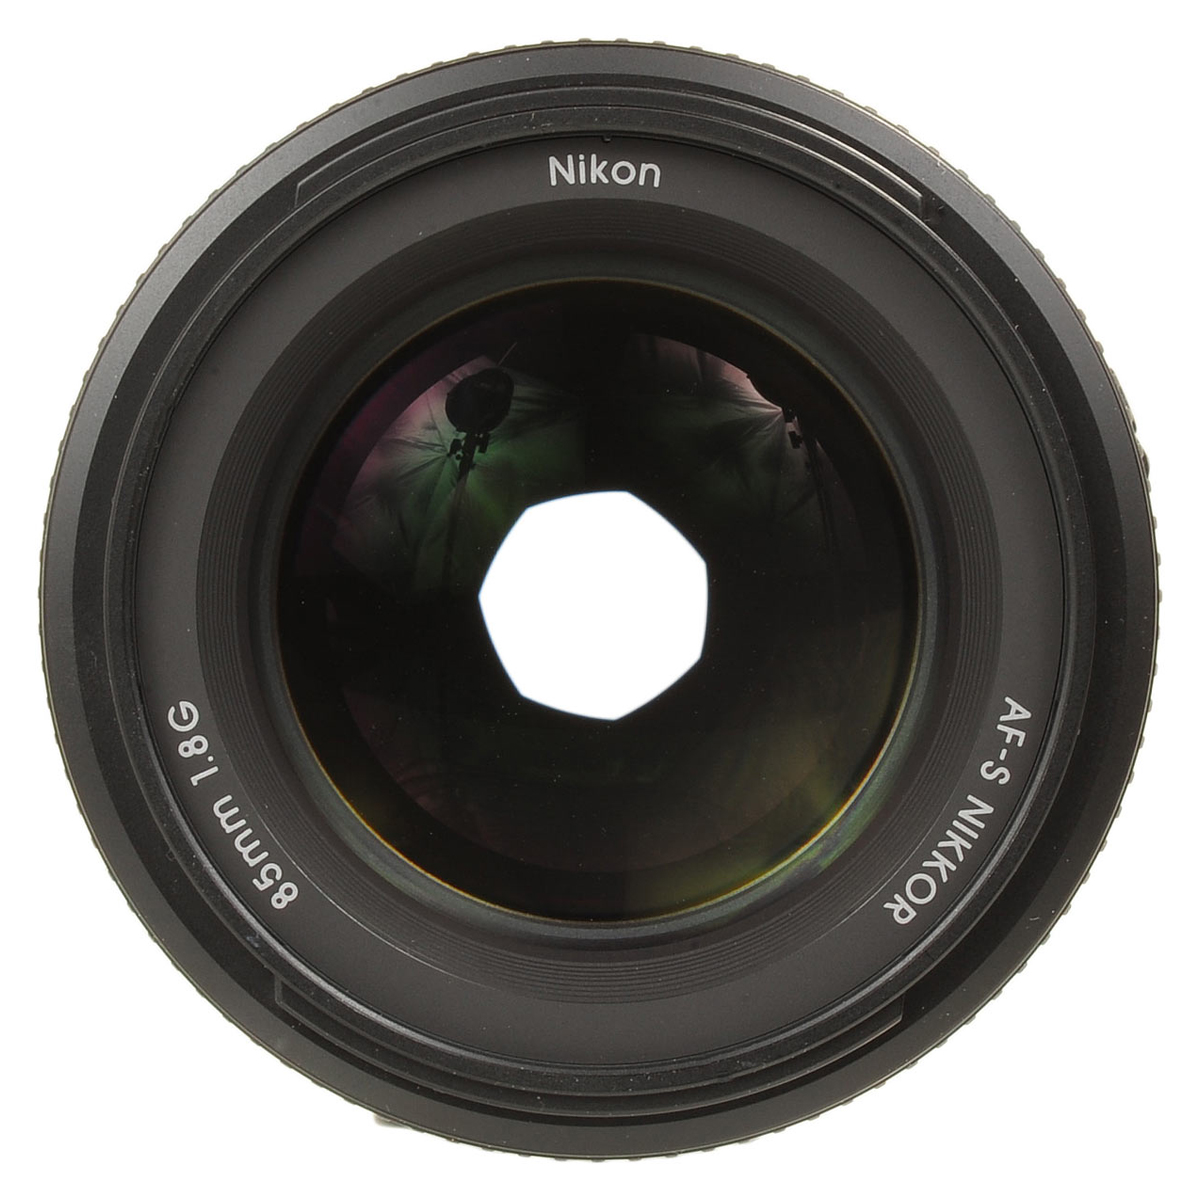 Ống Kính Nikon 85mm F1.8G - Hàng Nhập Khẩu